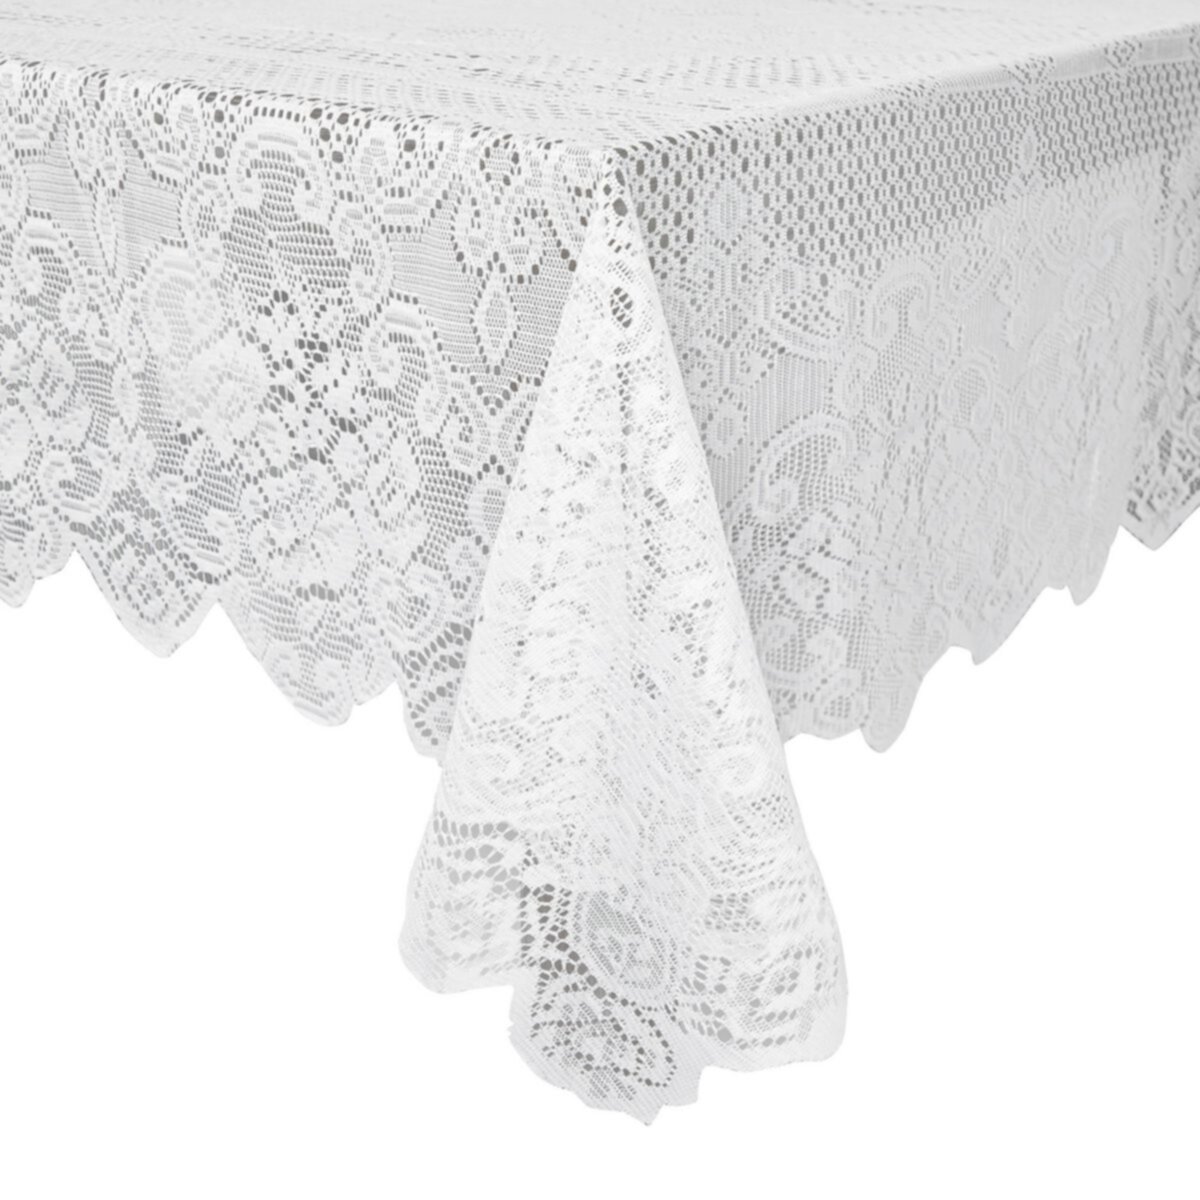 Белая кружевная скатерть для прямоугольных столов, винтажный стиль для официальных обедов, званых обедов, свадеб, детского душа (54 x 72 дюйма) Juvale